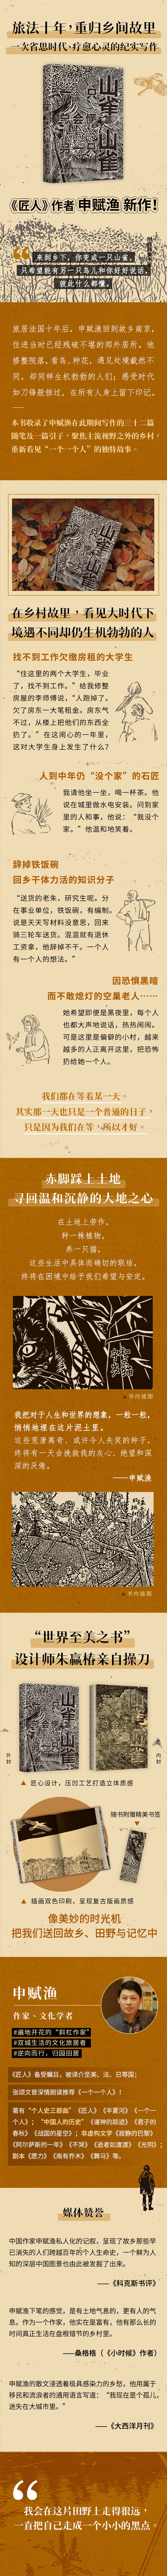 一只山雀总会懂另一只山雀 申赋渔 著 北京十月文艺出版社